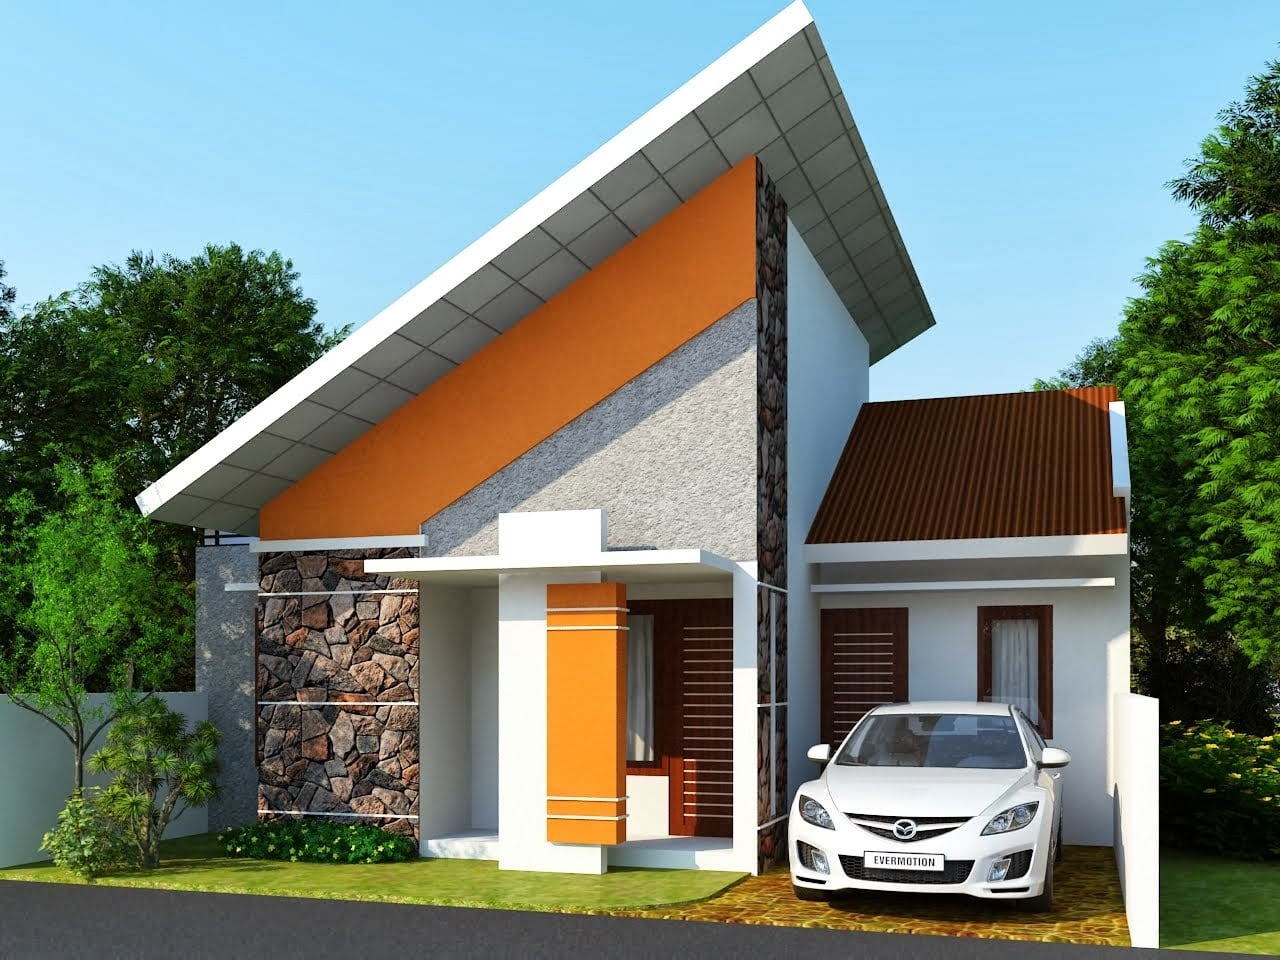 87 Trendy Model Atap Rumah Terbaru dan Terlengkap